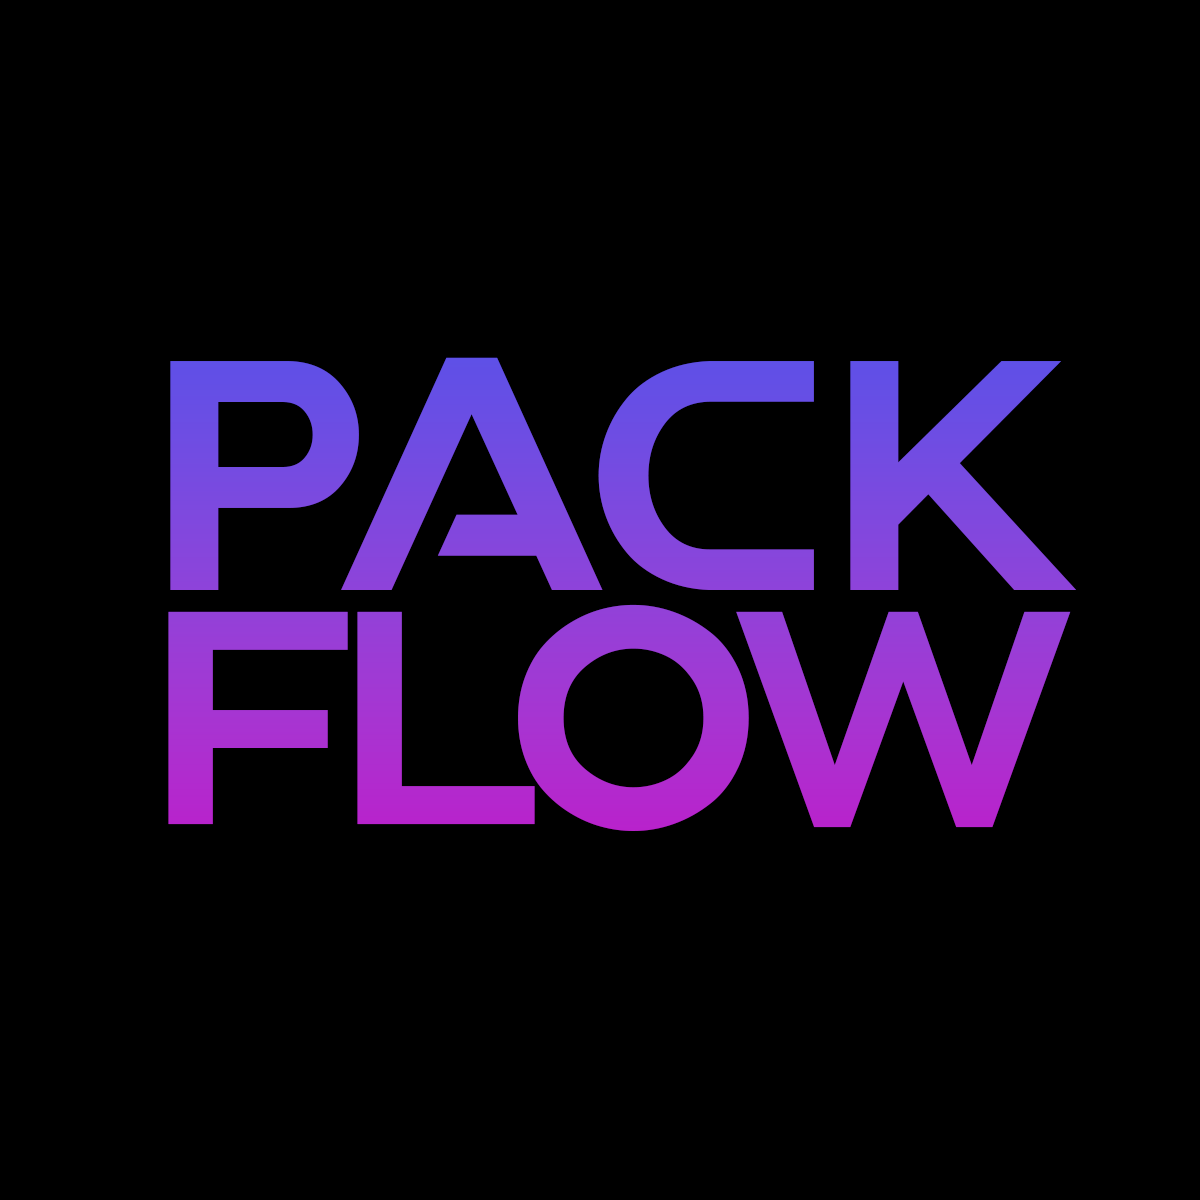 Packflow